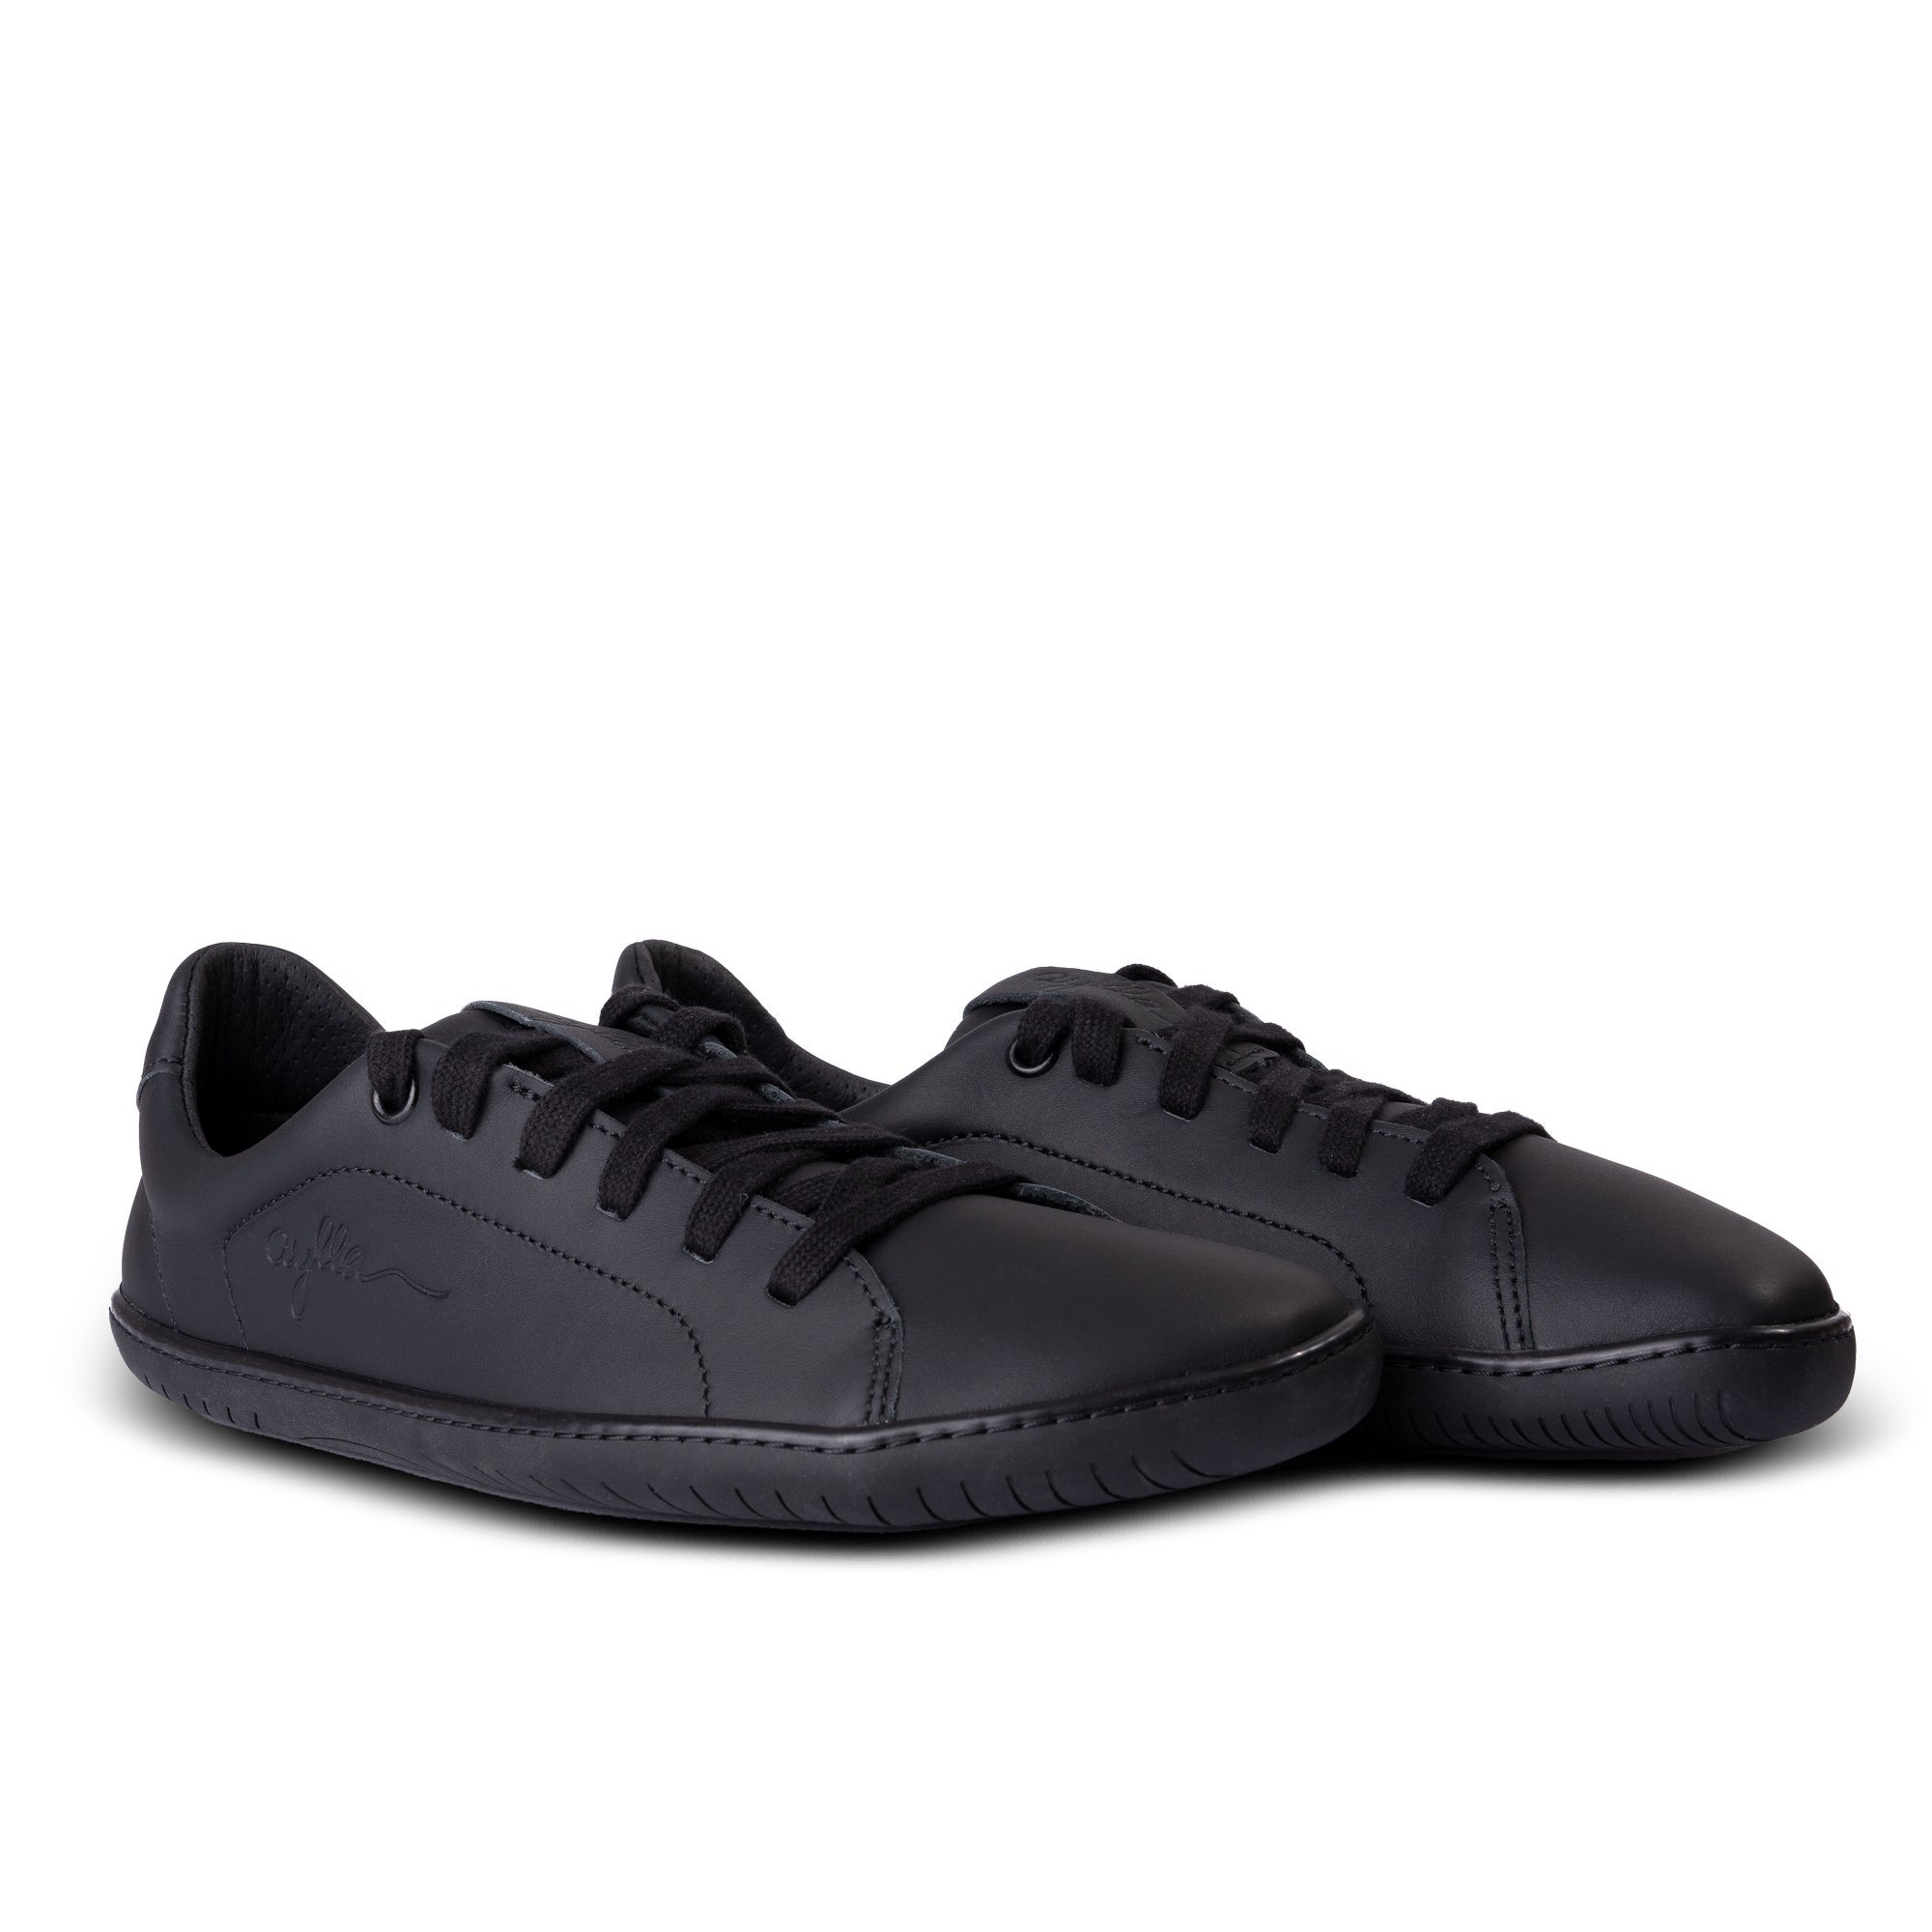 Aylla Keck Womens barfods sneakers i læder til kvinder i farven black / black, par